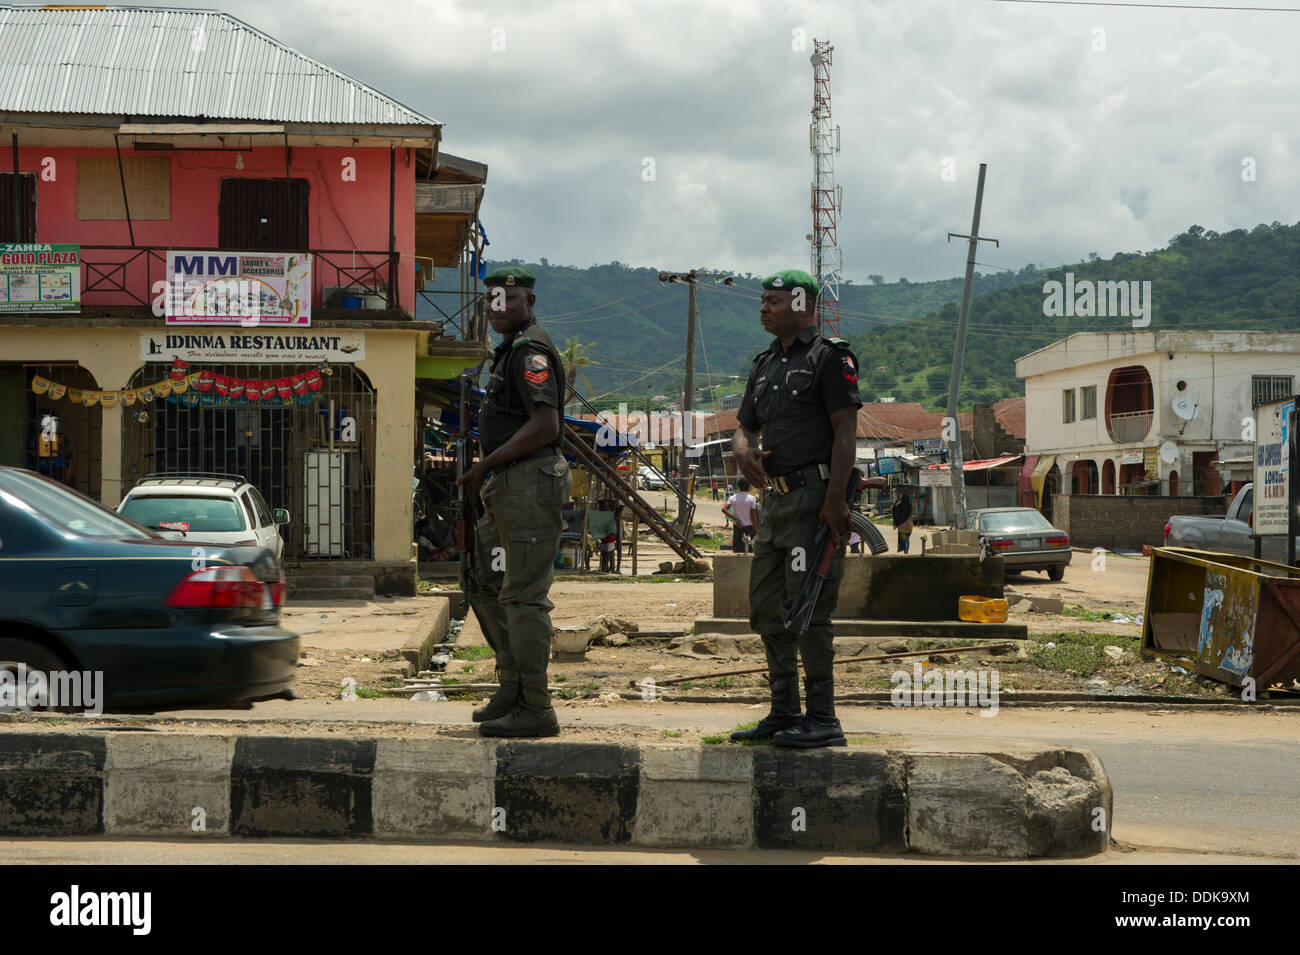 Policiers armés surveiller une rue de Lokoja, Nigéria Banque D'Images